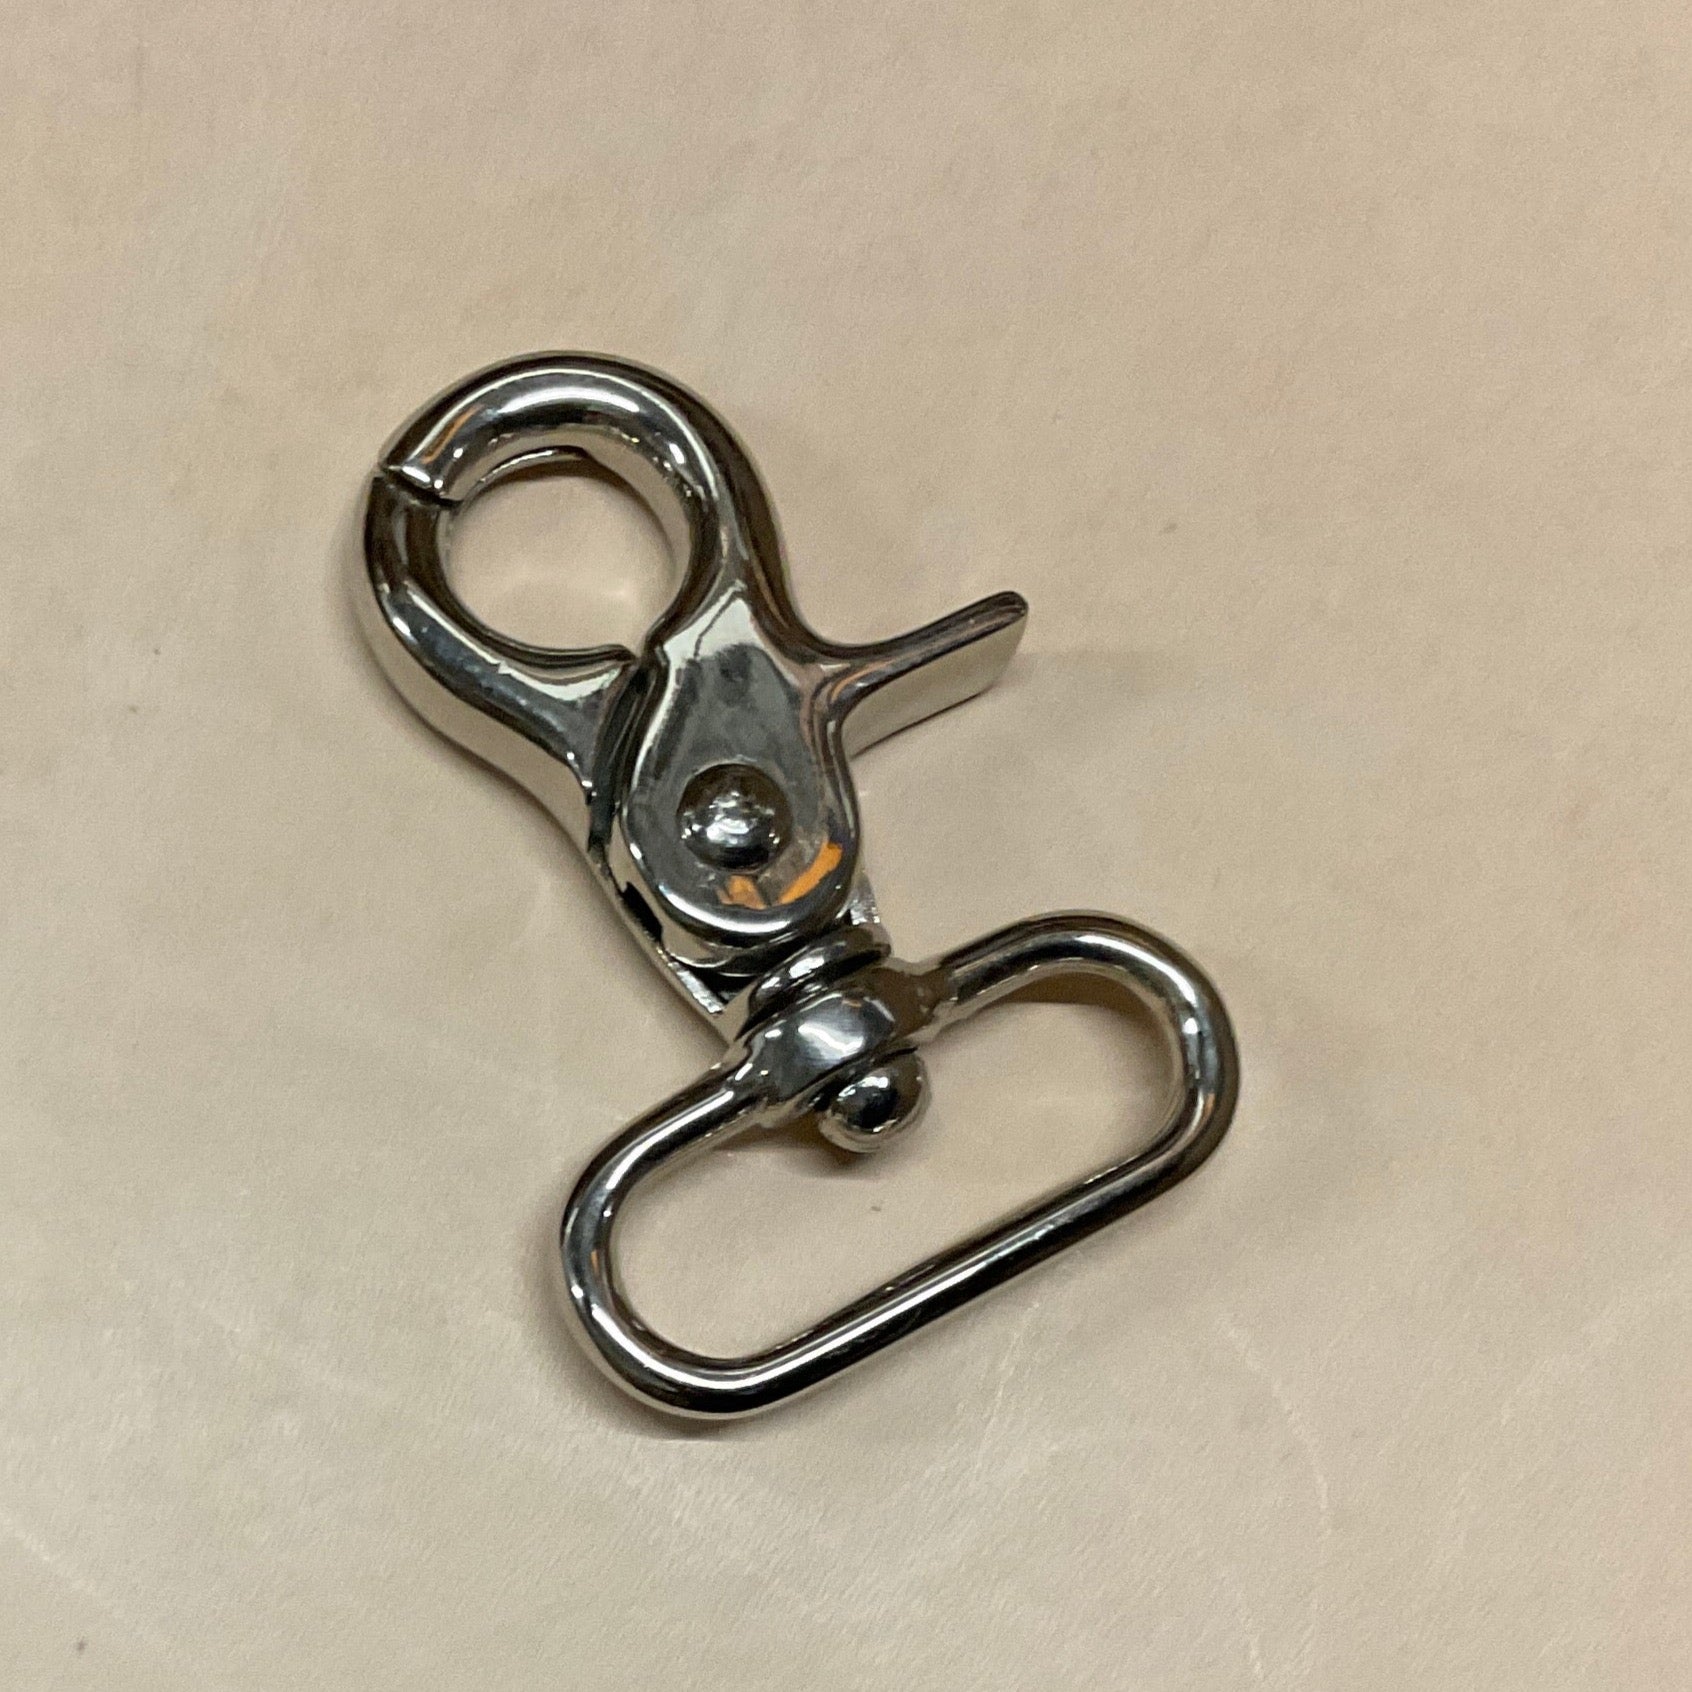 Musketon hook Nickel oval “ a” shape 30 mm